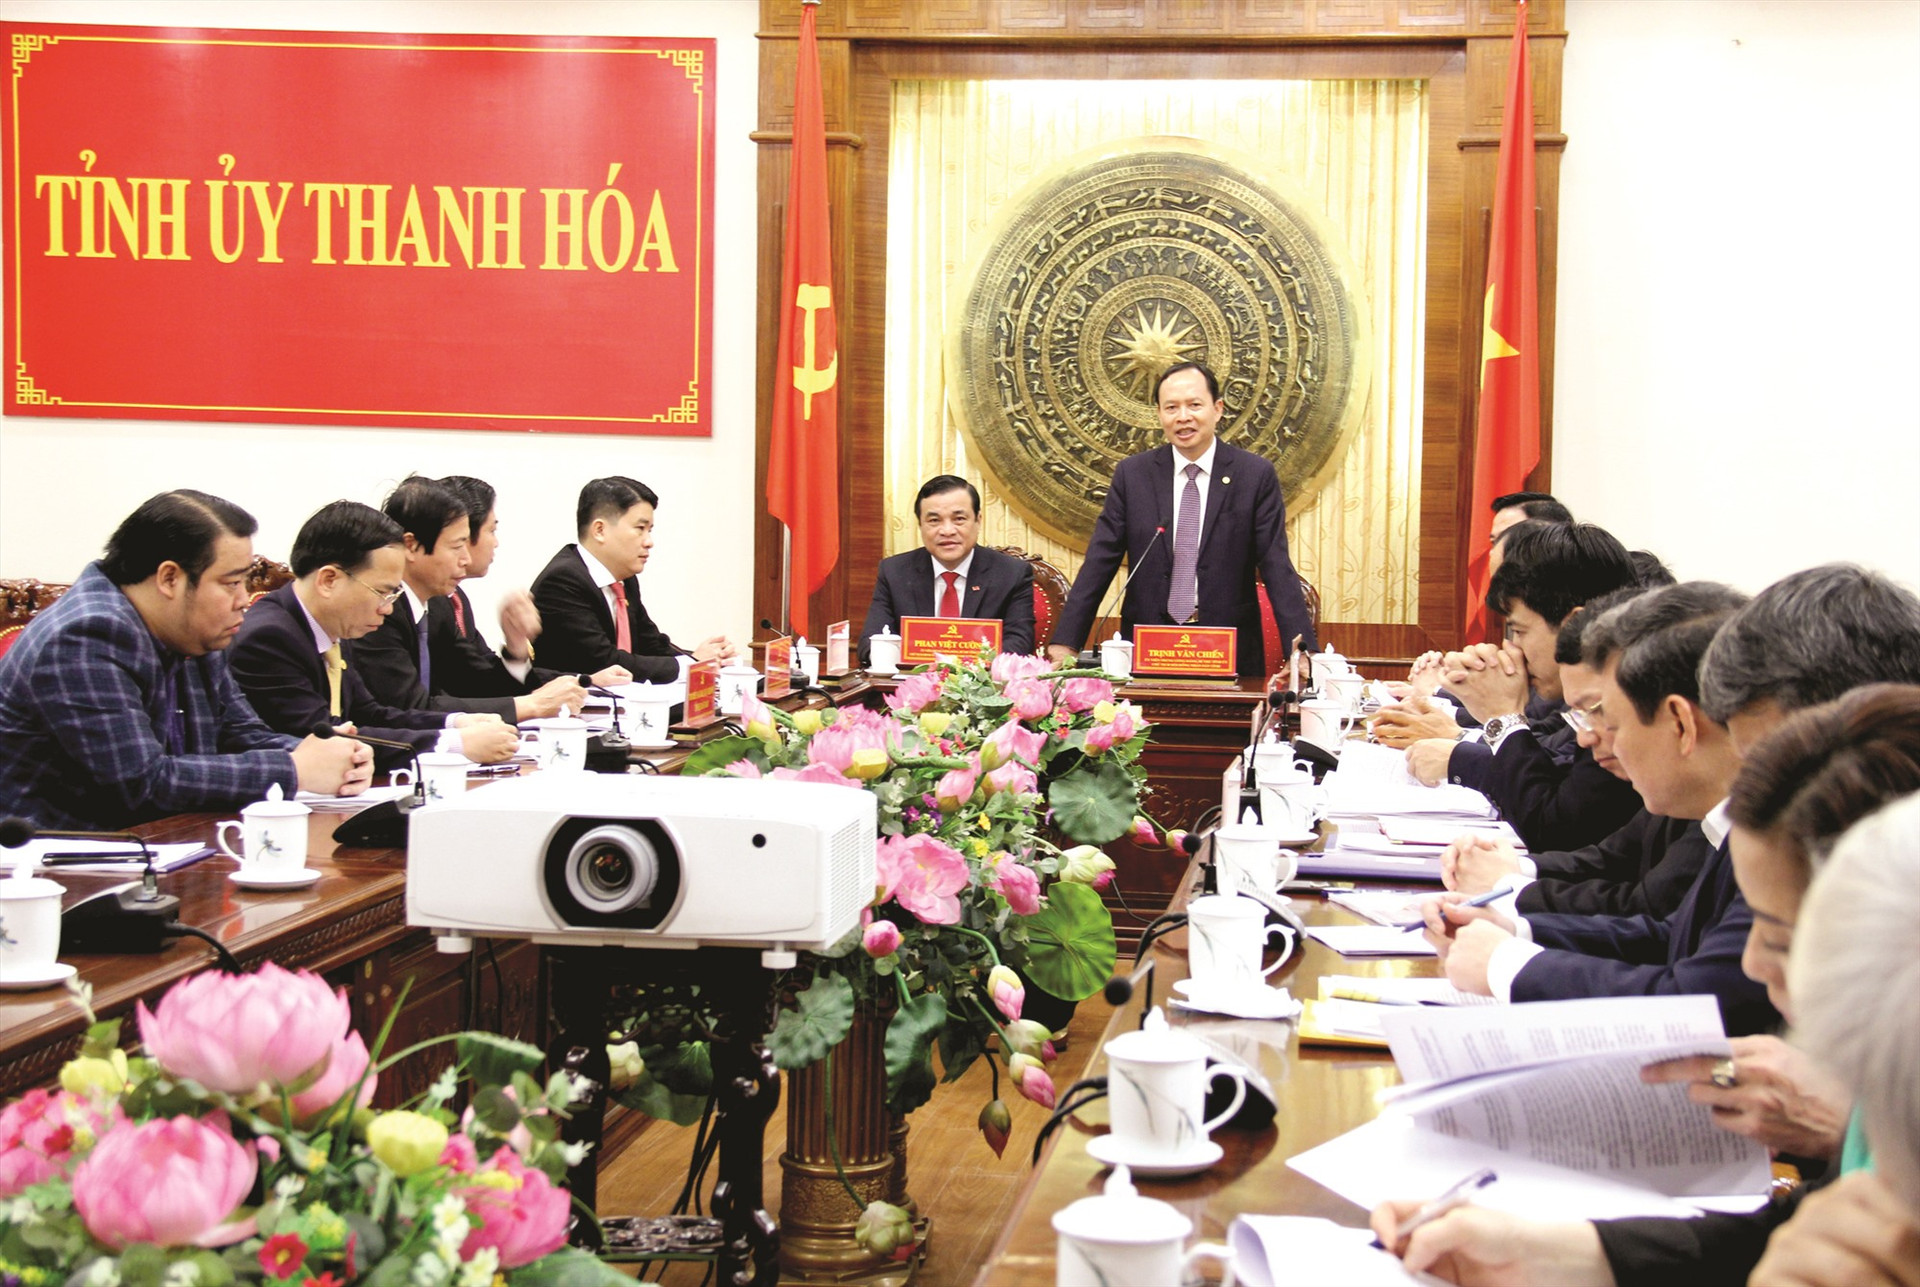 Tỉnh ủy Quảng Nam và Thanh Hóa trong cuộc làm việc ngày 18.2.2020 tại tỉnh Thanh Hóa. Ảnh: ALĂNG NGƯỚC